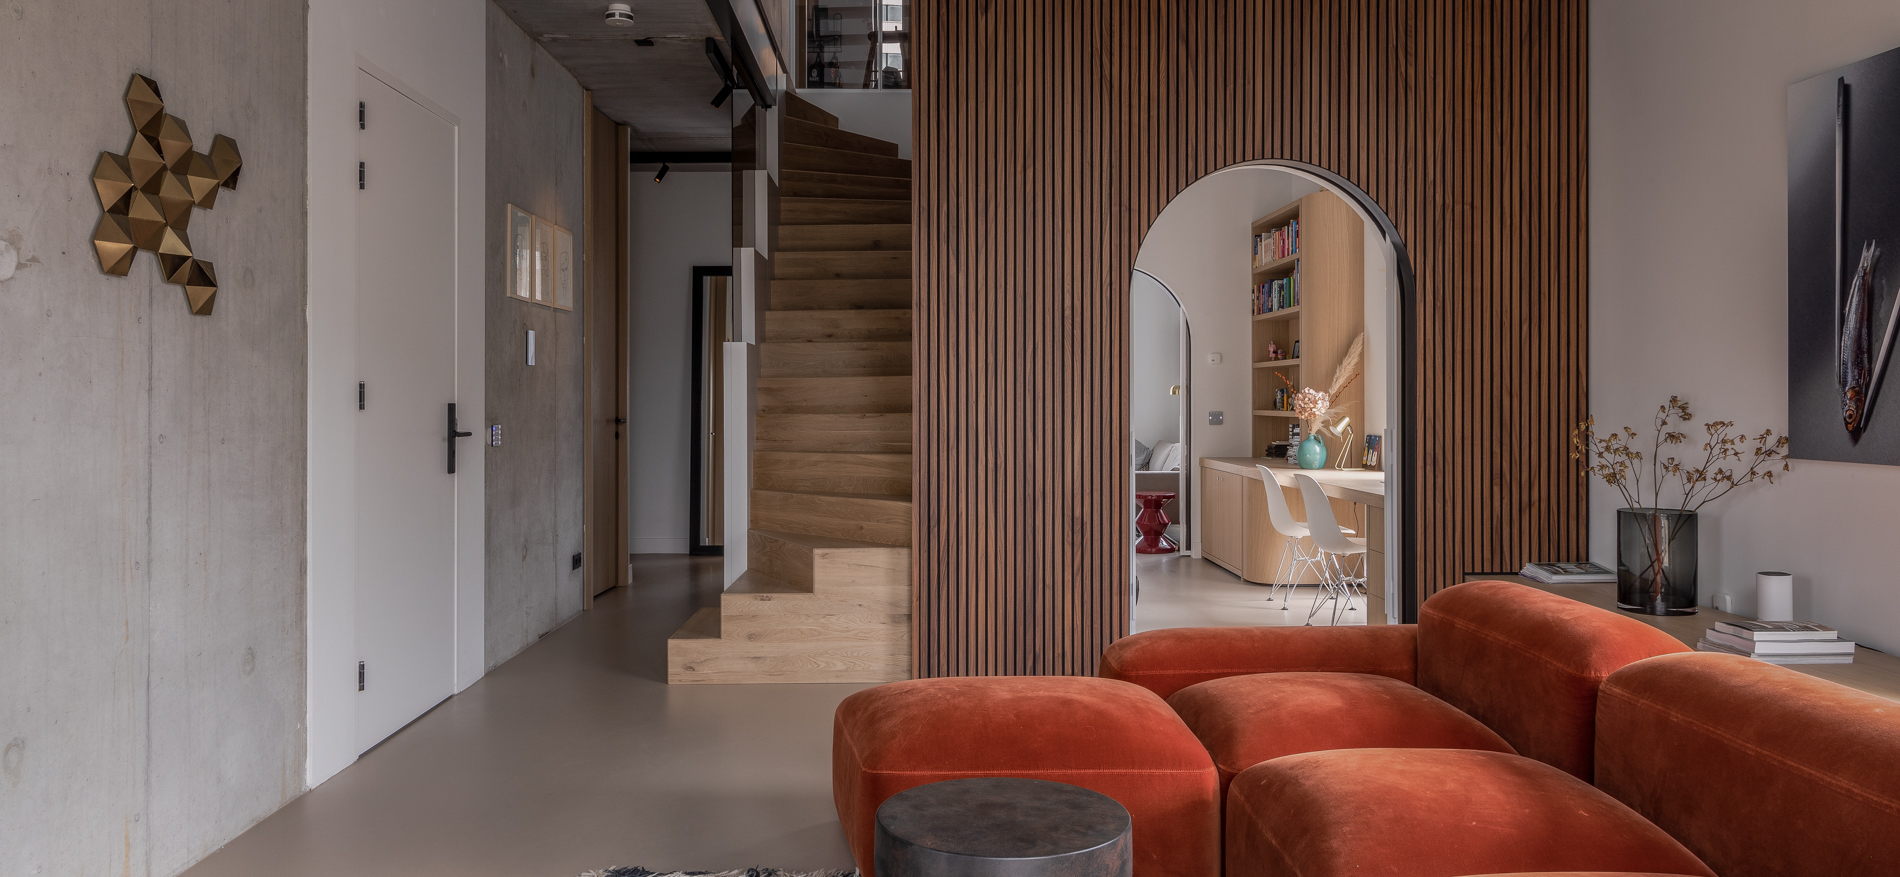 Einrichtung Wohnung | Amsterdam (NL) - Residential Interior Design